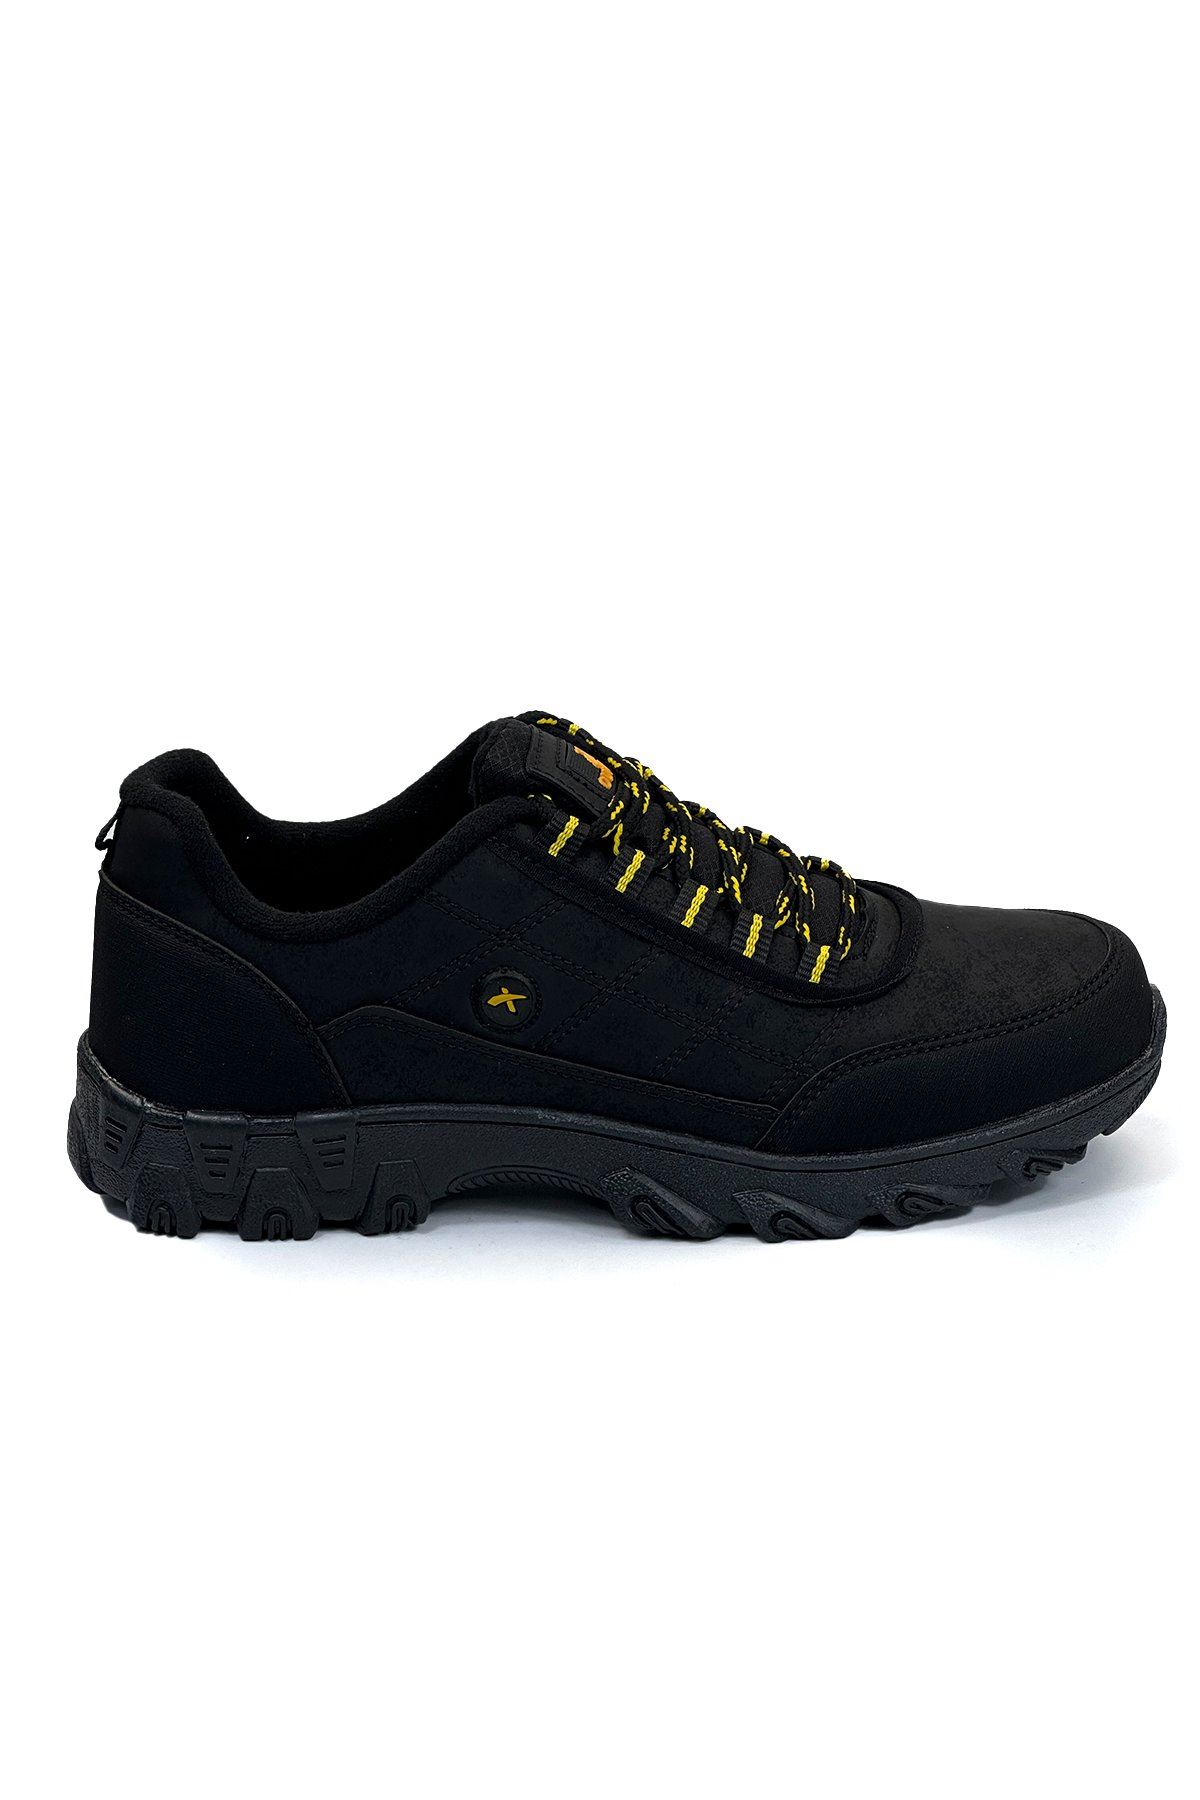 Unisex Outdoor Ayakkabı EZ06 - Siyah Sarı